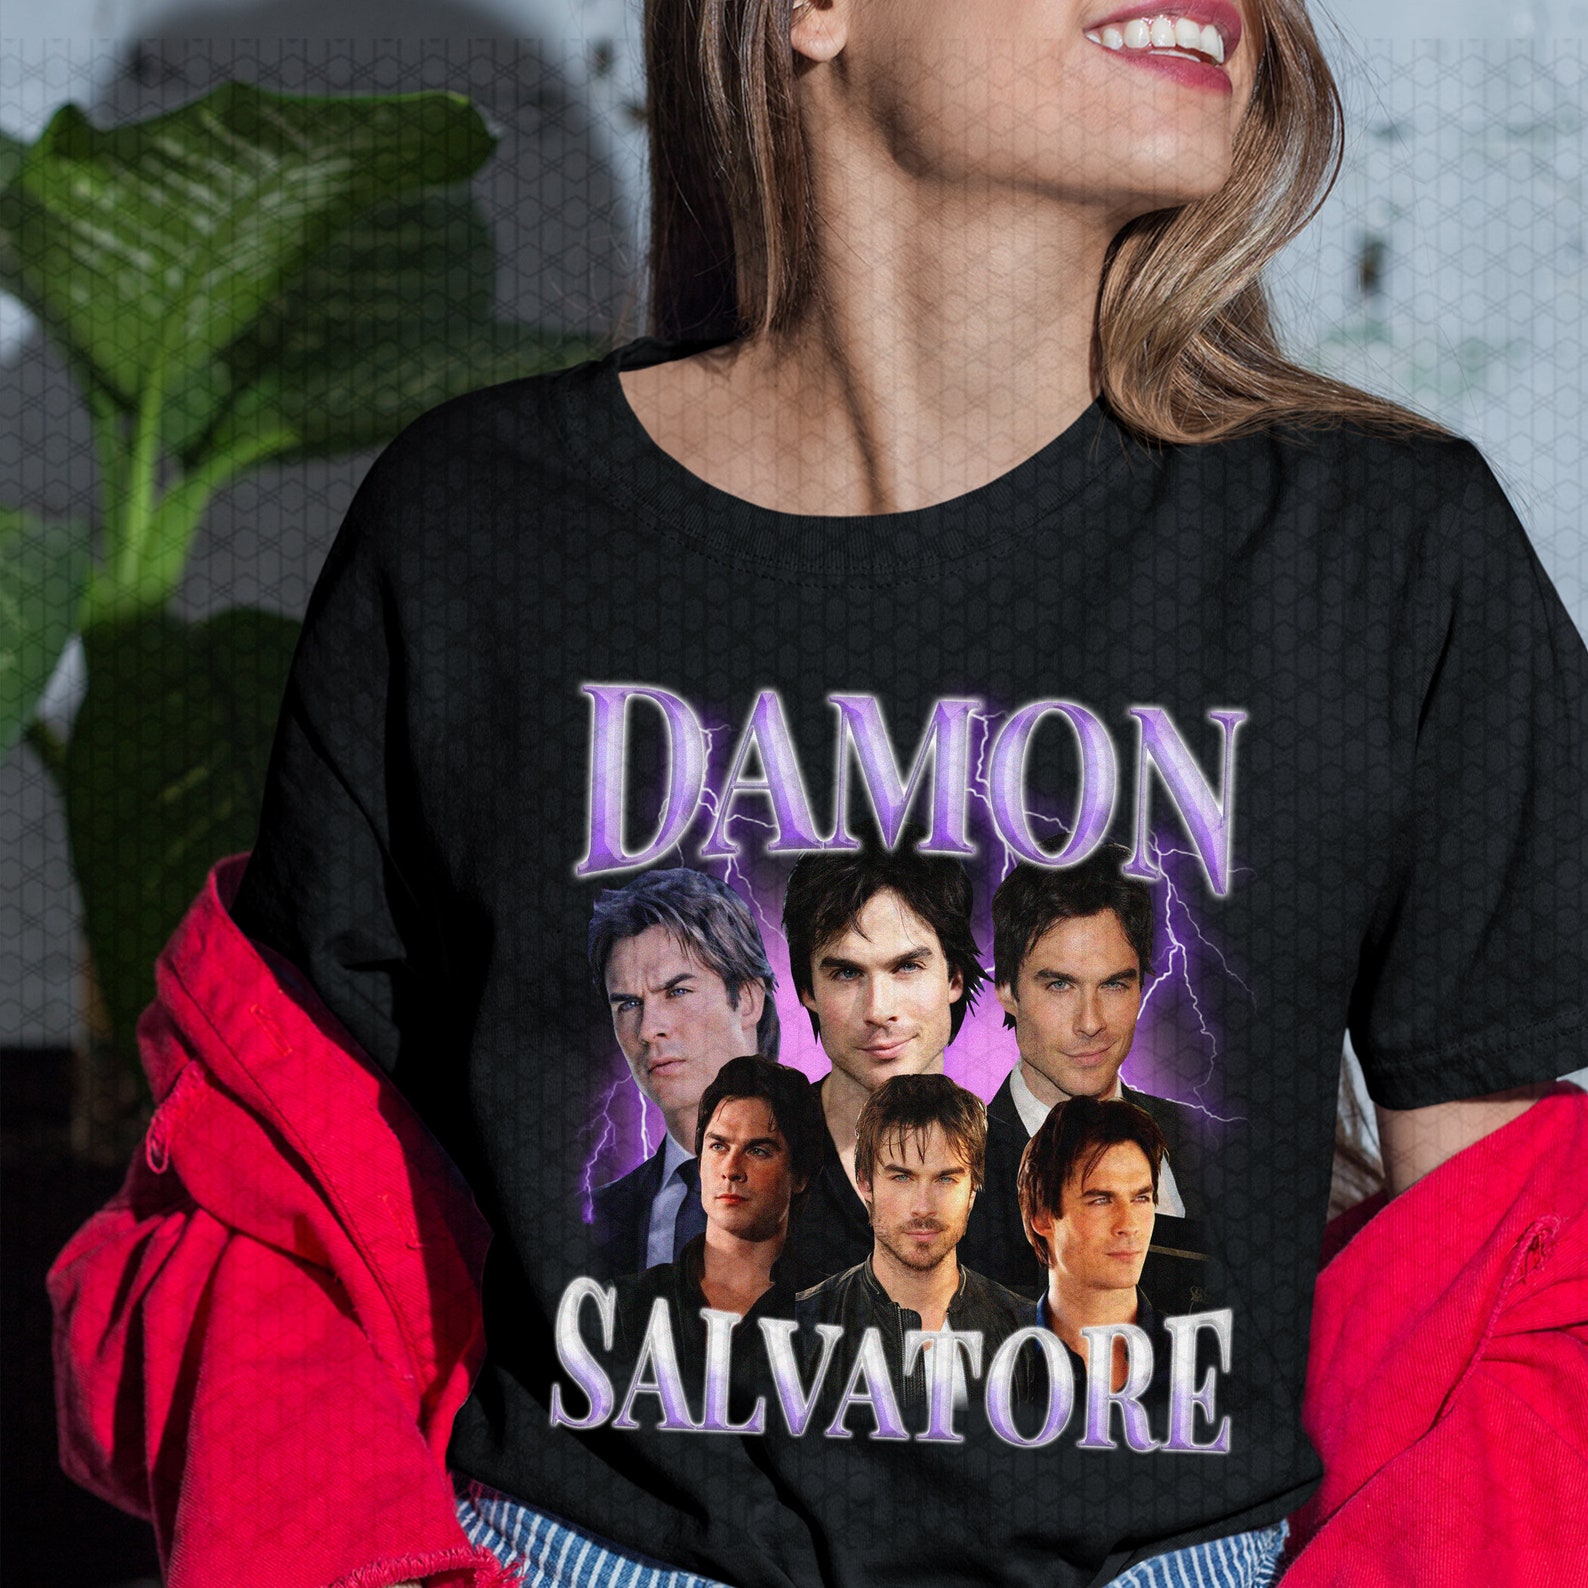 Damon Salvatore Shirt The Vampire Diaries Ian somerhalder TV | Etsy